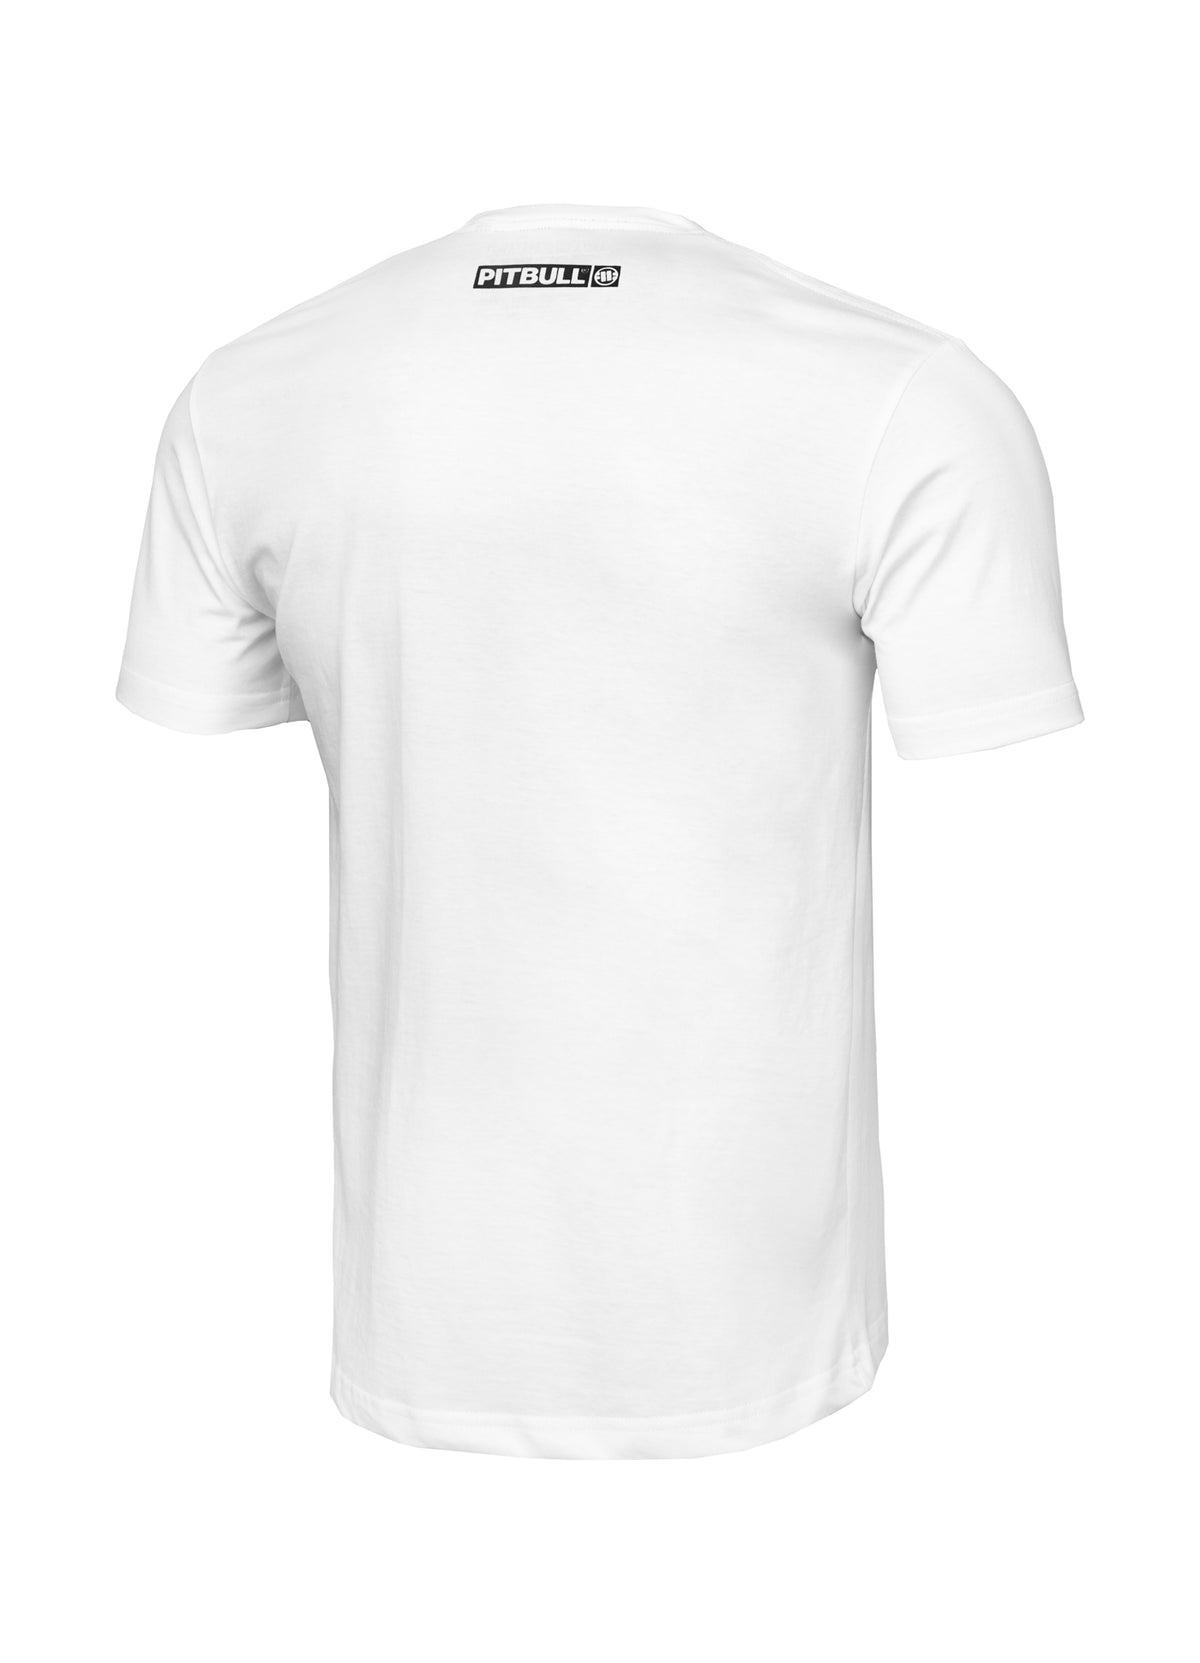 HILLTOP Lightweight White T-shirt